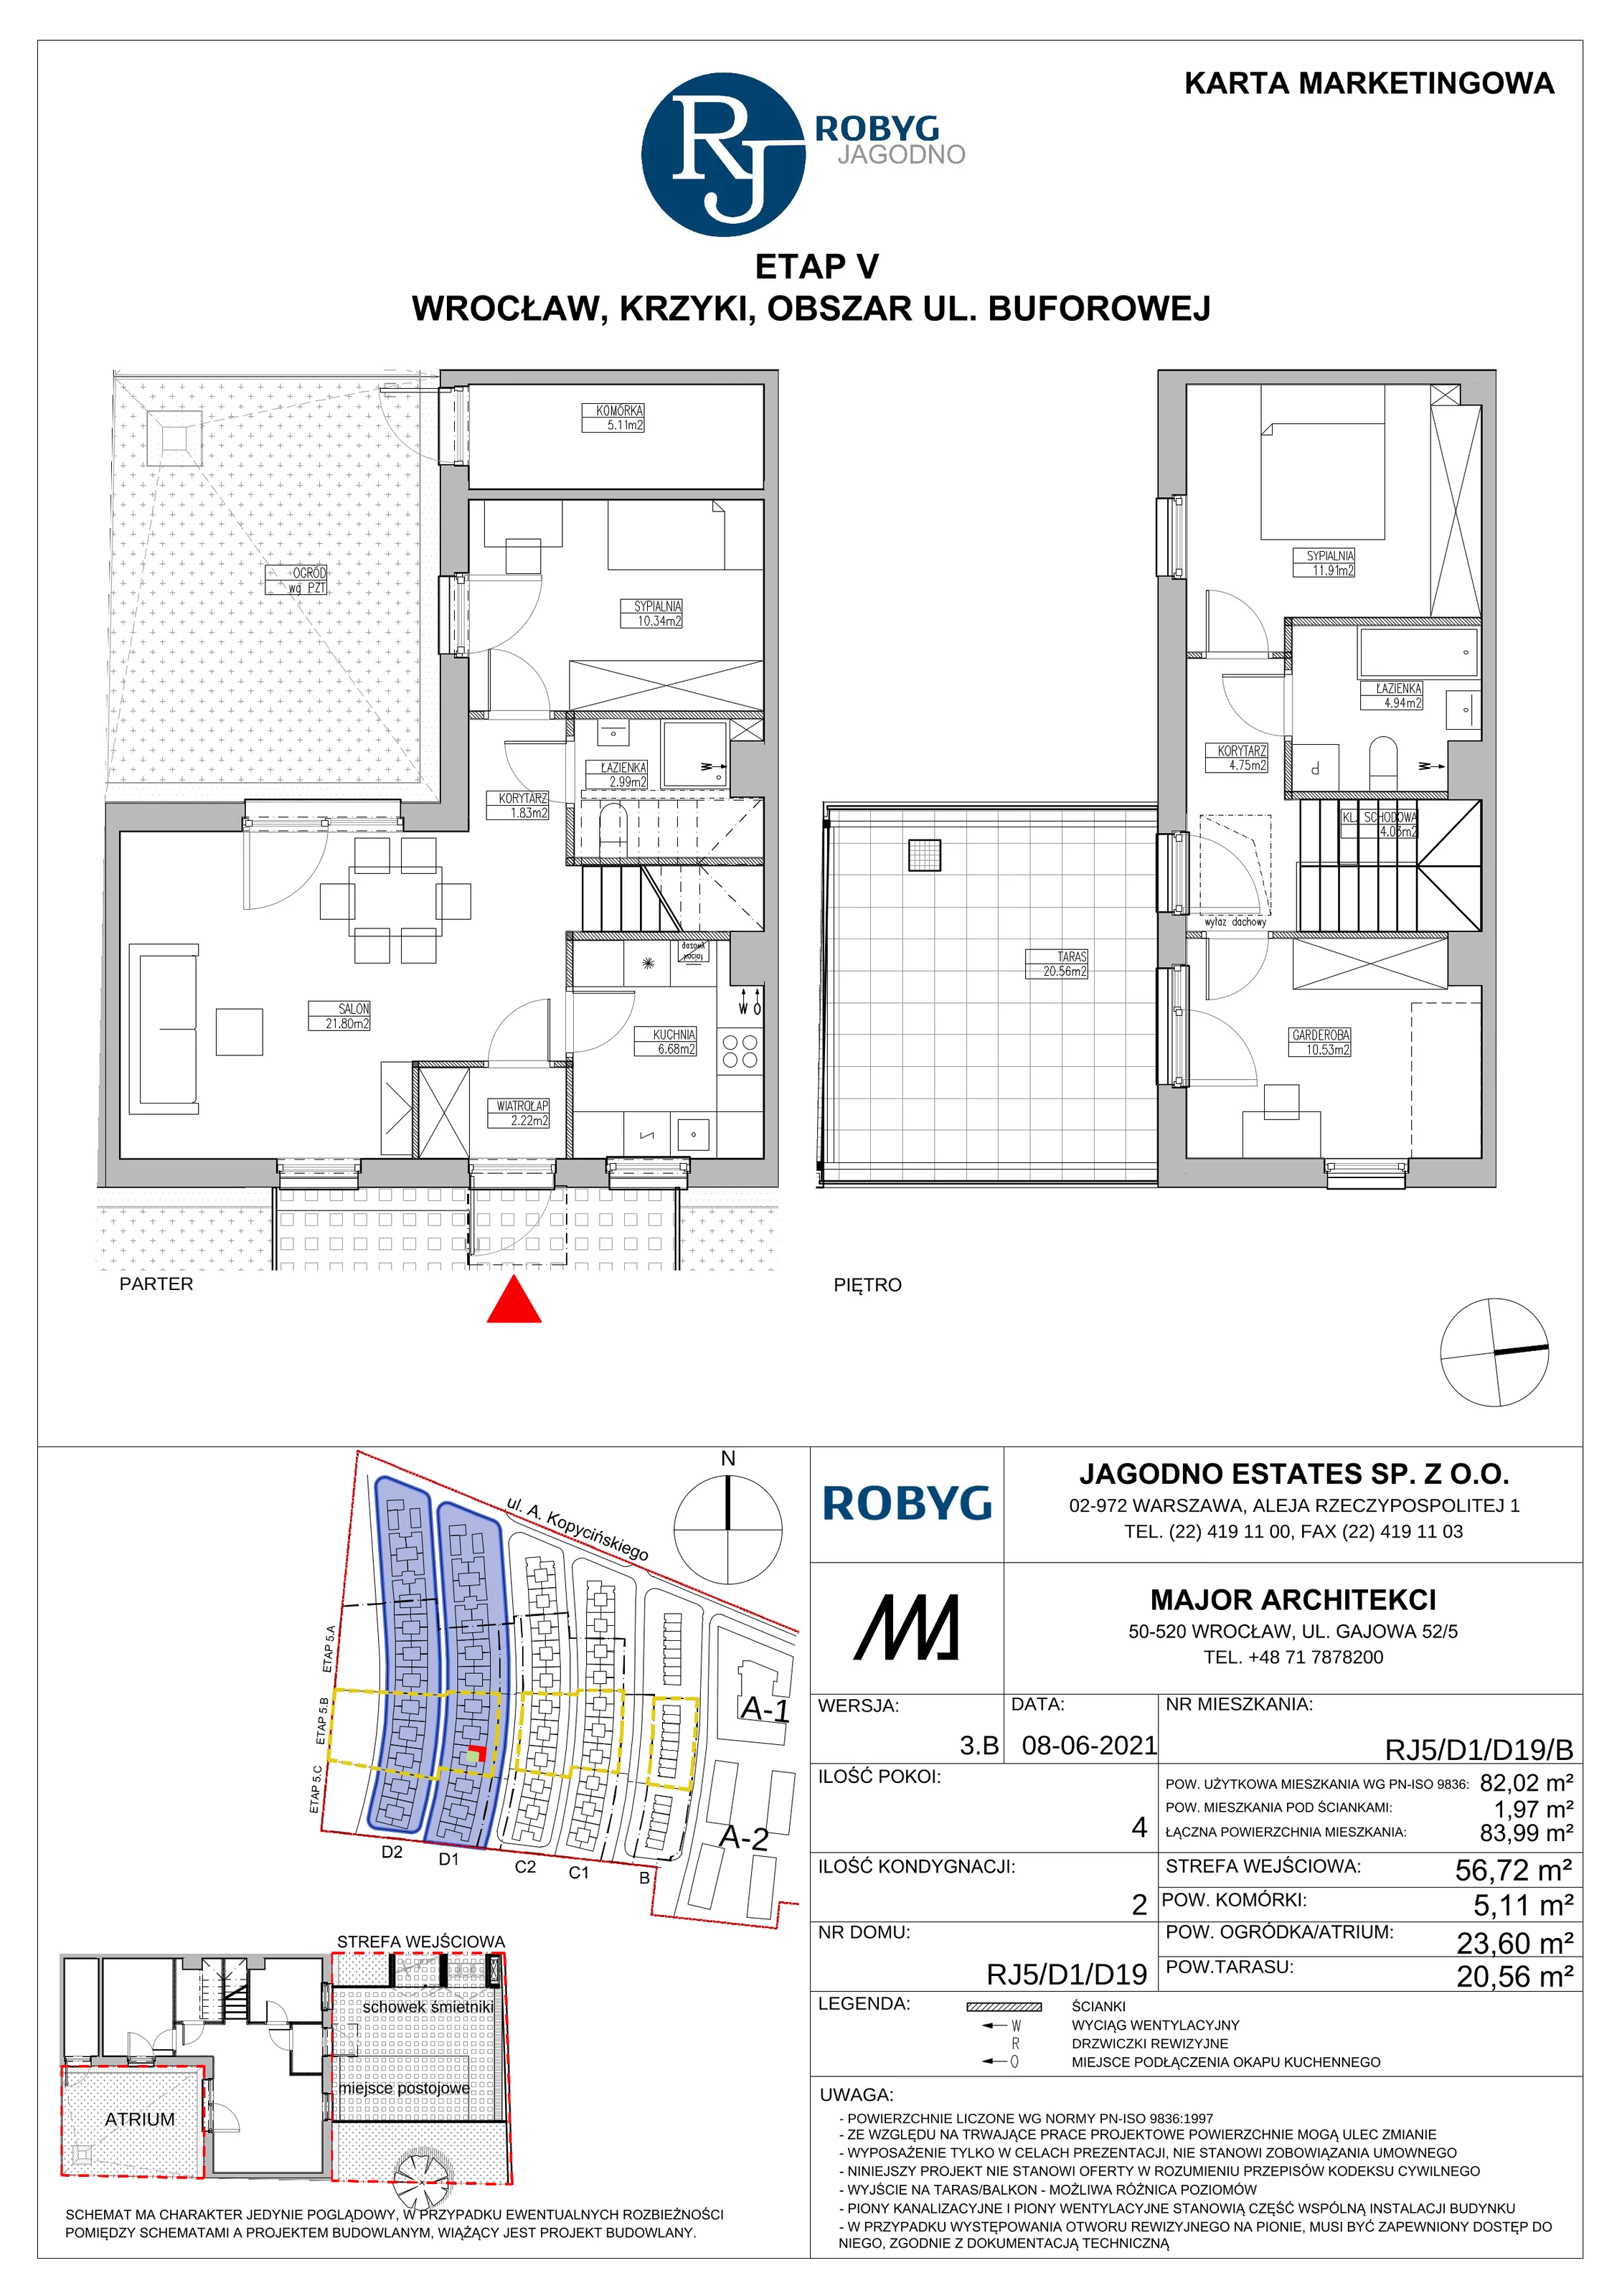 Dom 82,02 m², oferta nr RJ5/D1/D19/B, Robyg Jagodno, Wrocław, Jagodno, Krzyki, ul. Kopycińskiego